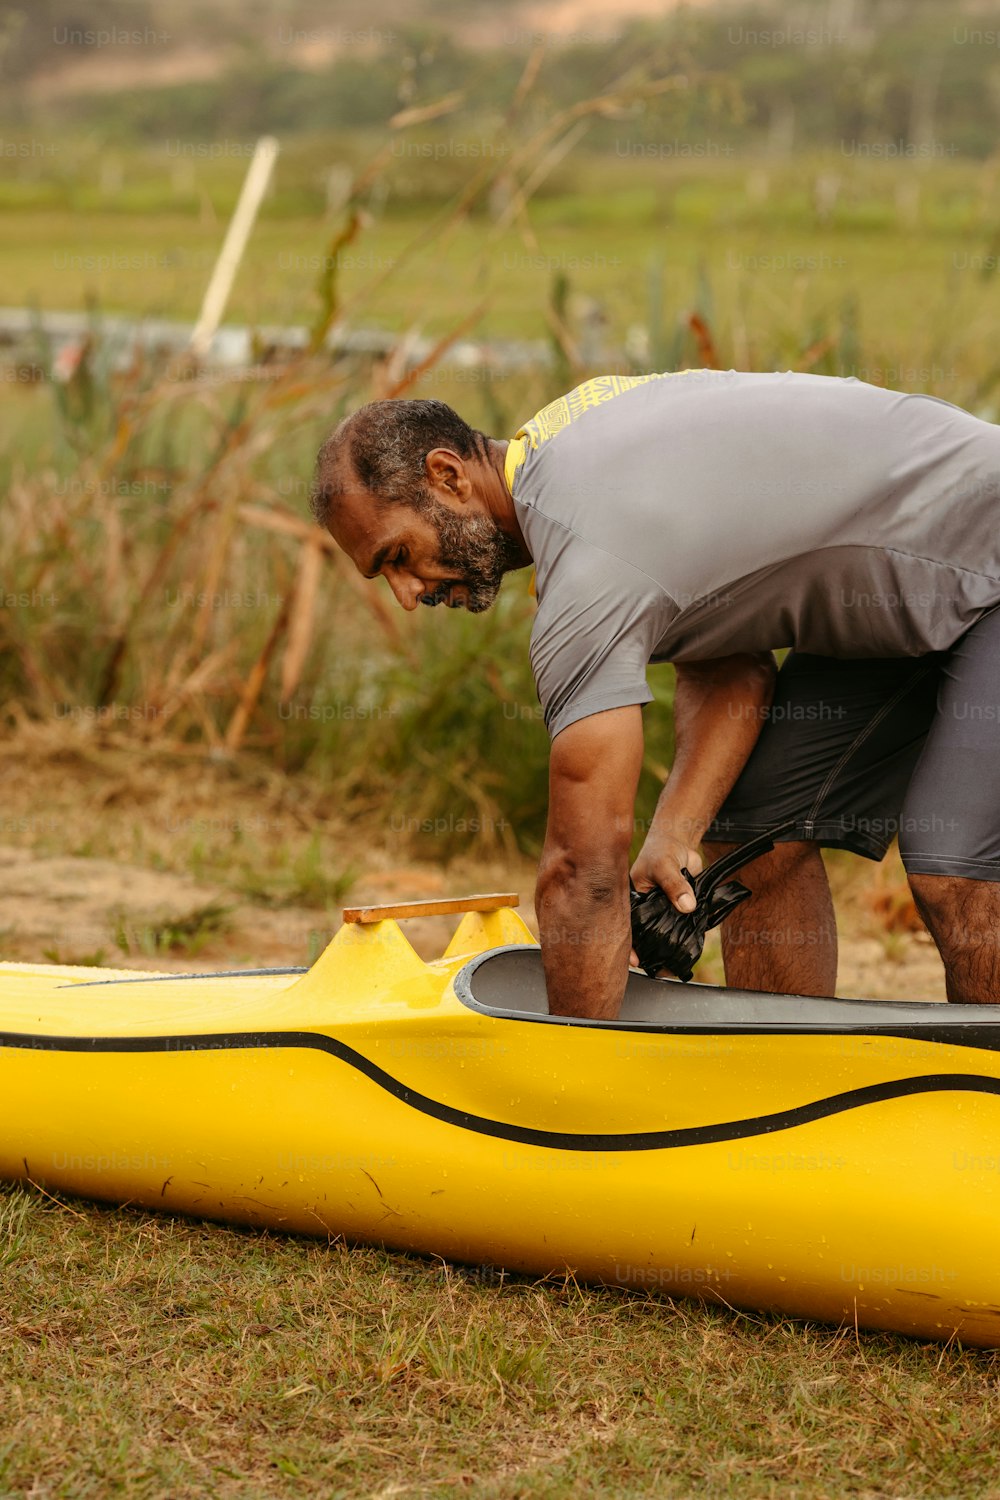 Un hombre trabajando en un kayak en el suelo